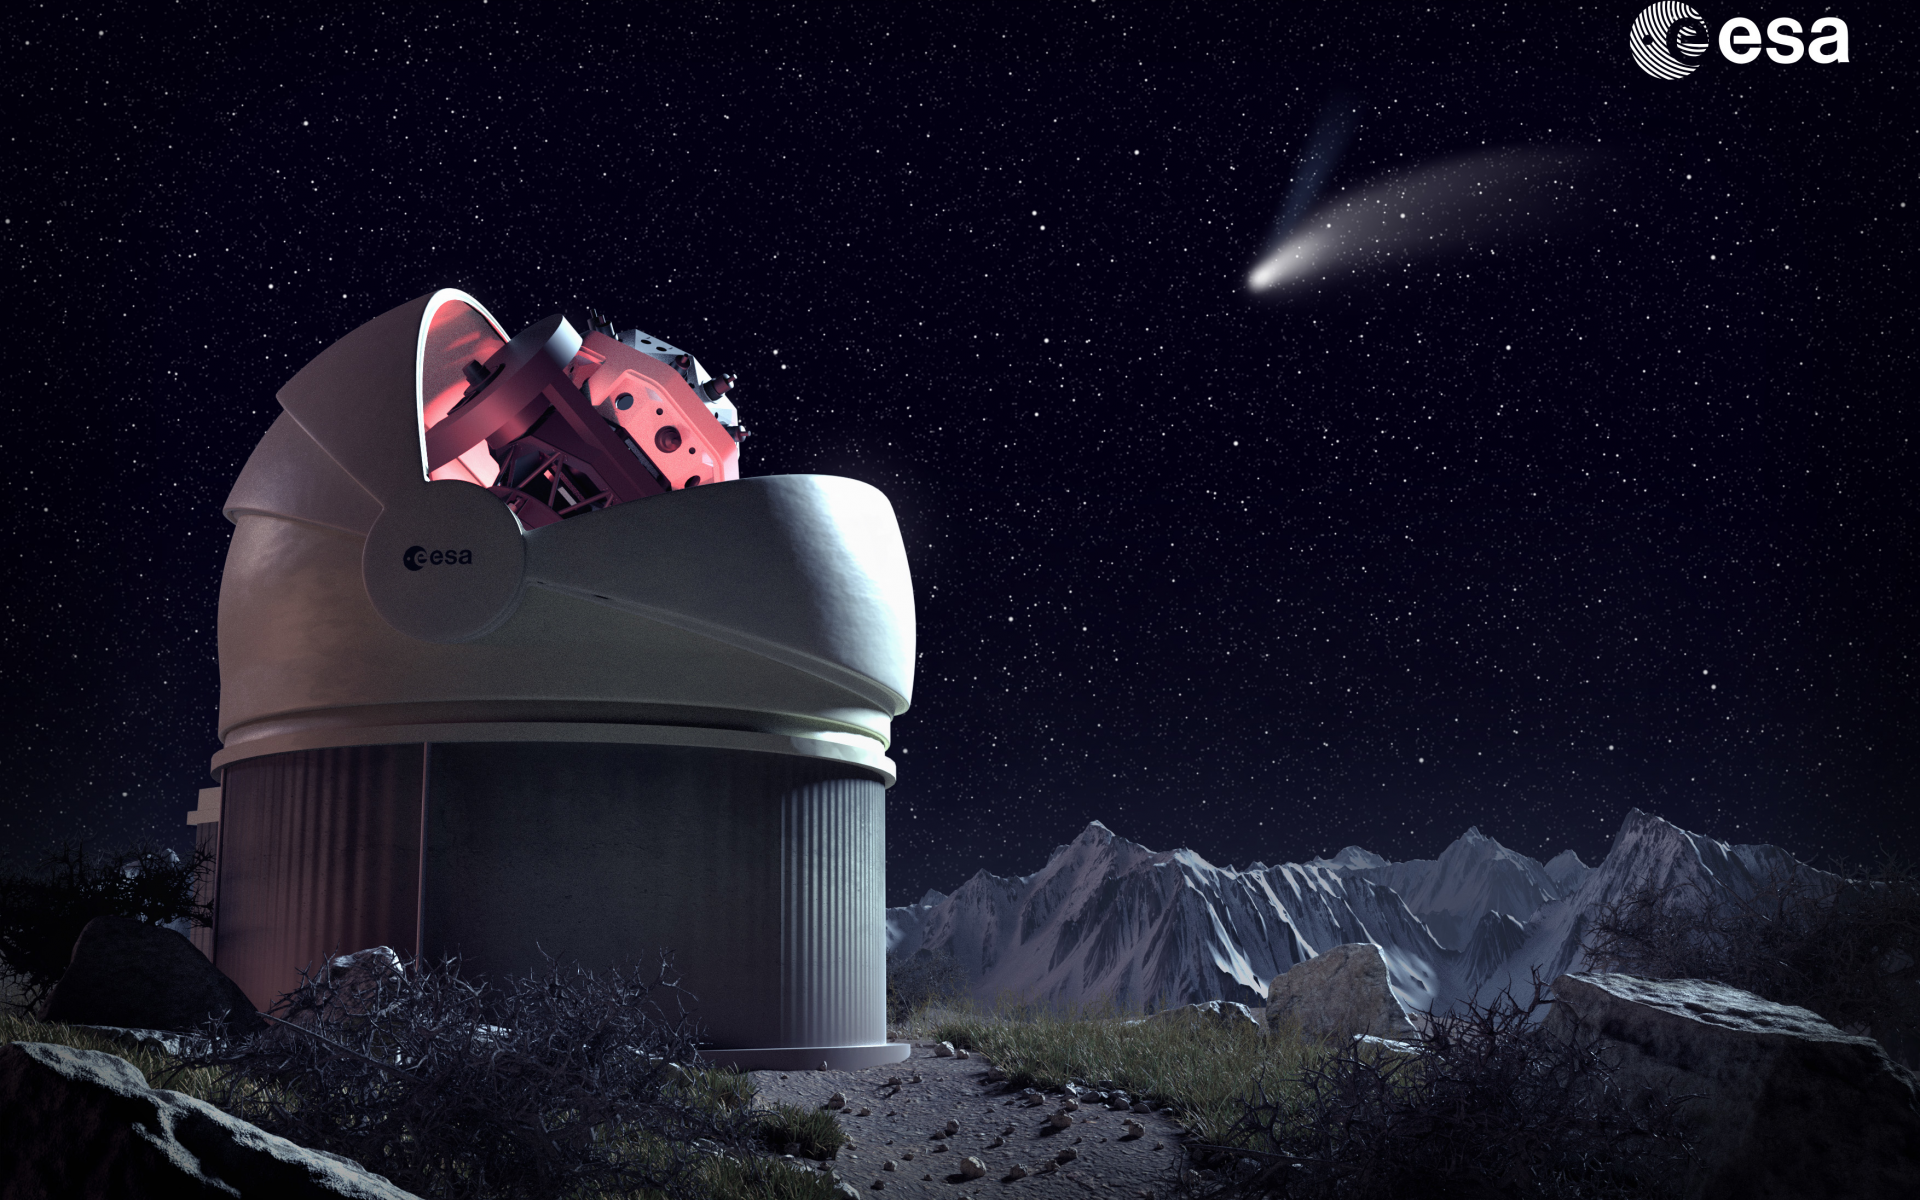 обсерватория, телескоп, наука, техника, космос, ночь, звёзды, комета